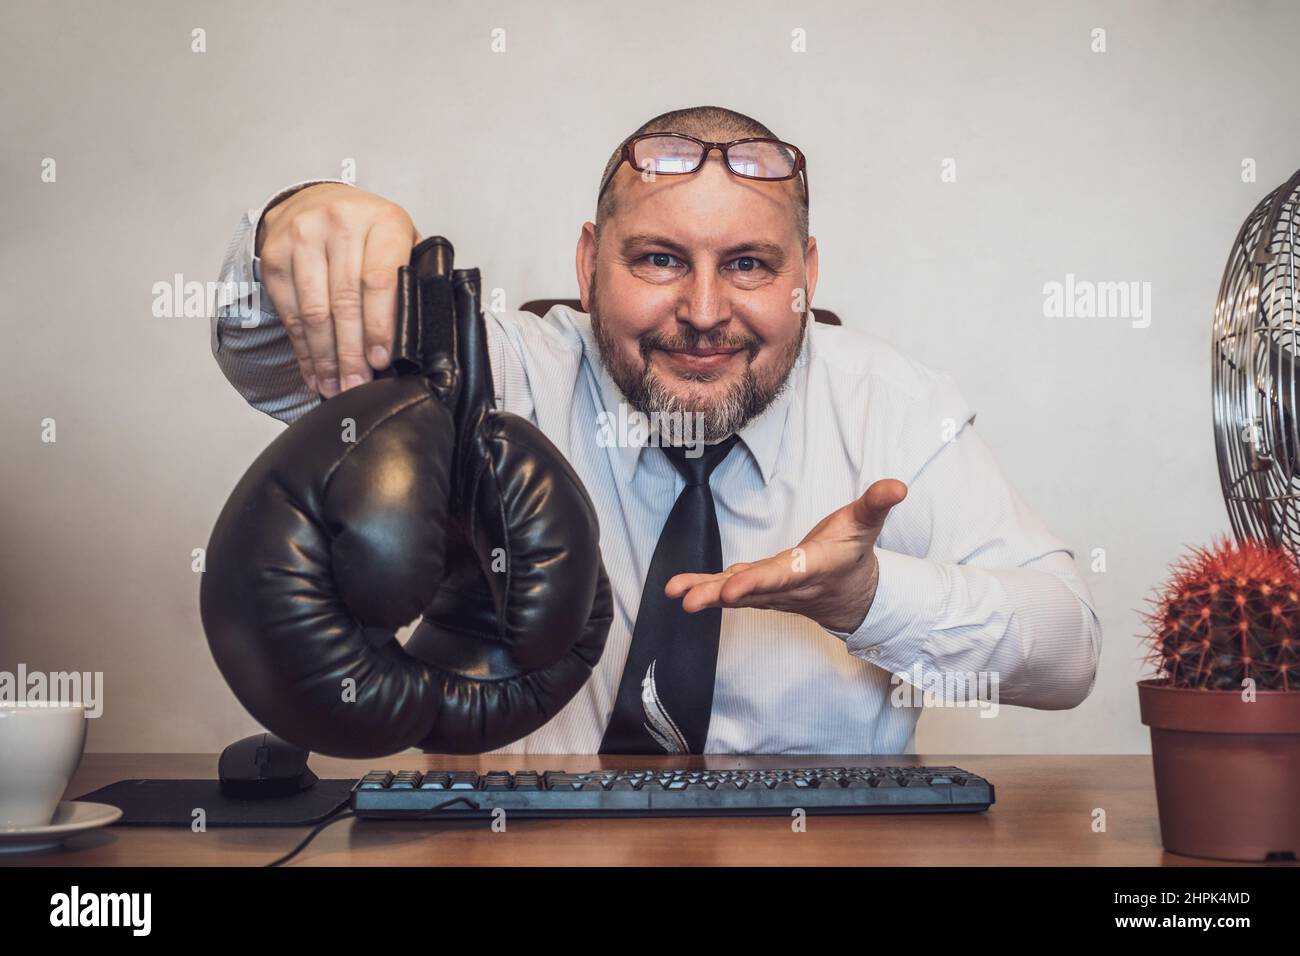 Ein lächelnder Geschäftsmann, der an einem Tisch sitzt, bietet höflich Boxhandschuhe an. Vorschläge zur Lösung geschäftlicher Probleme Stockfoto